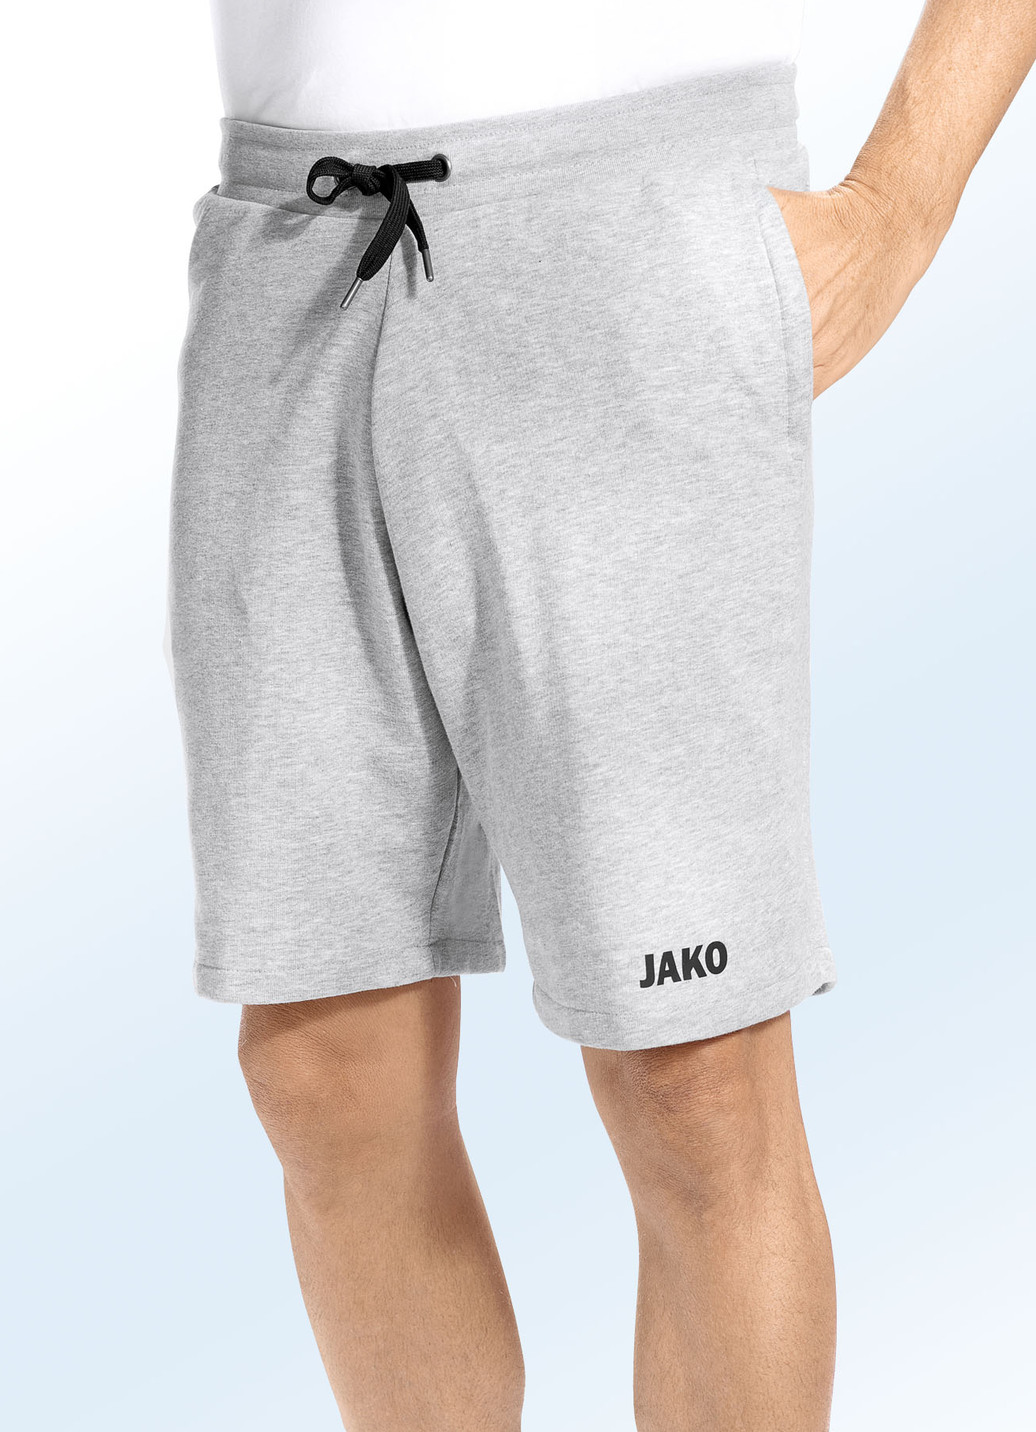 "Jako"-Shorts in 3 Farben, Hellgrau Meliert, Größe 4XL (62) von Jako